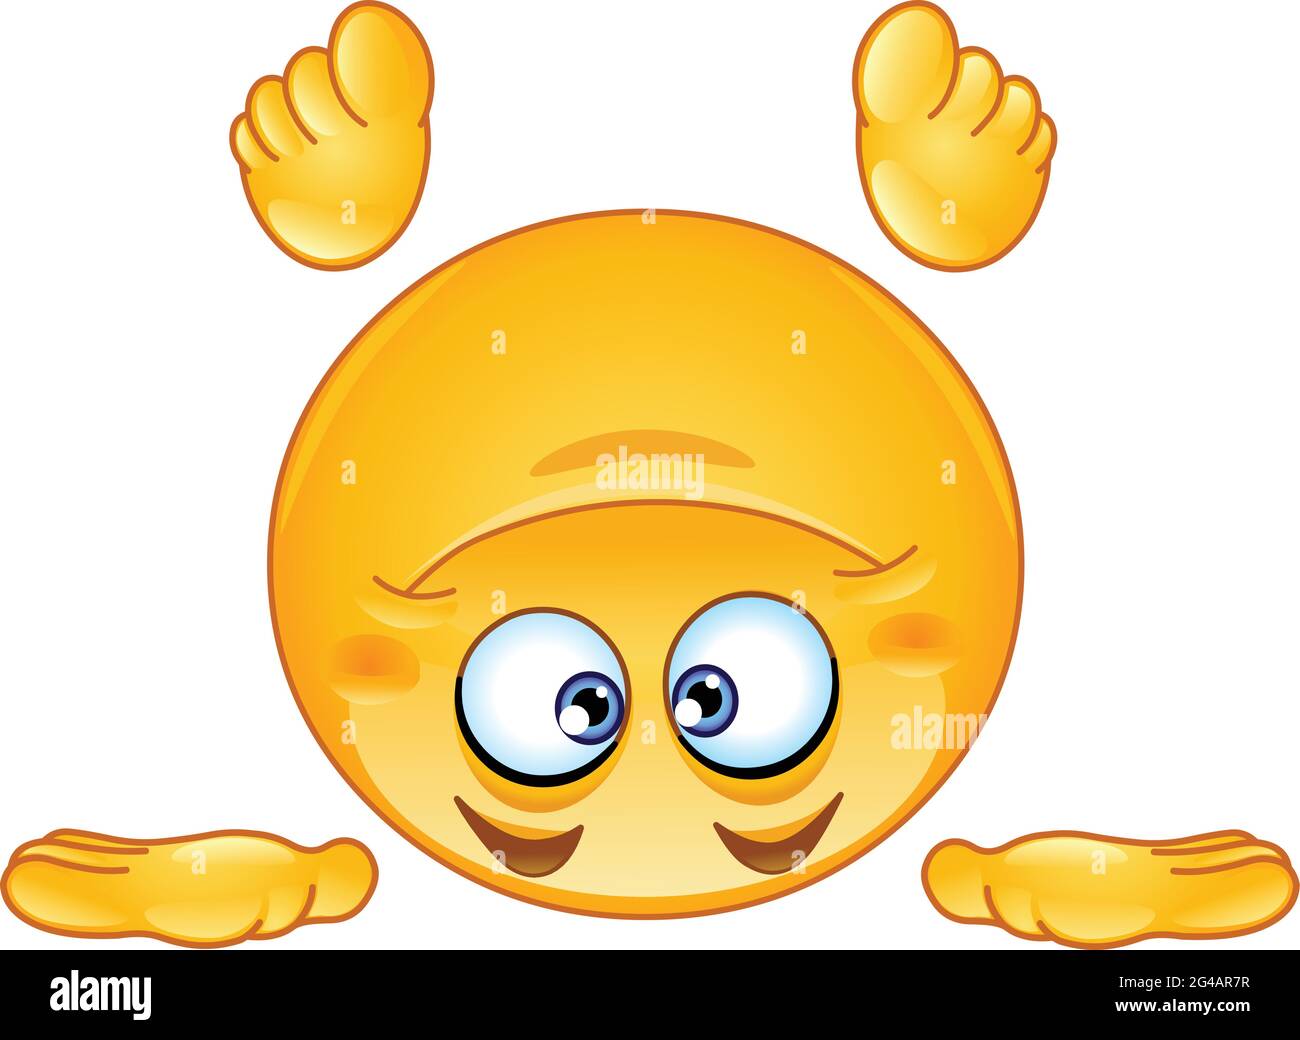 Emoji emoticon standing on his head Stock Vector